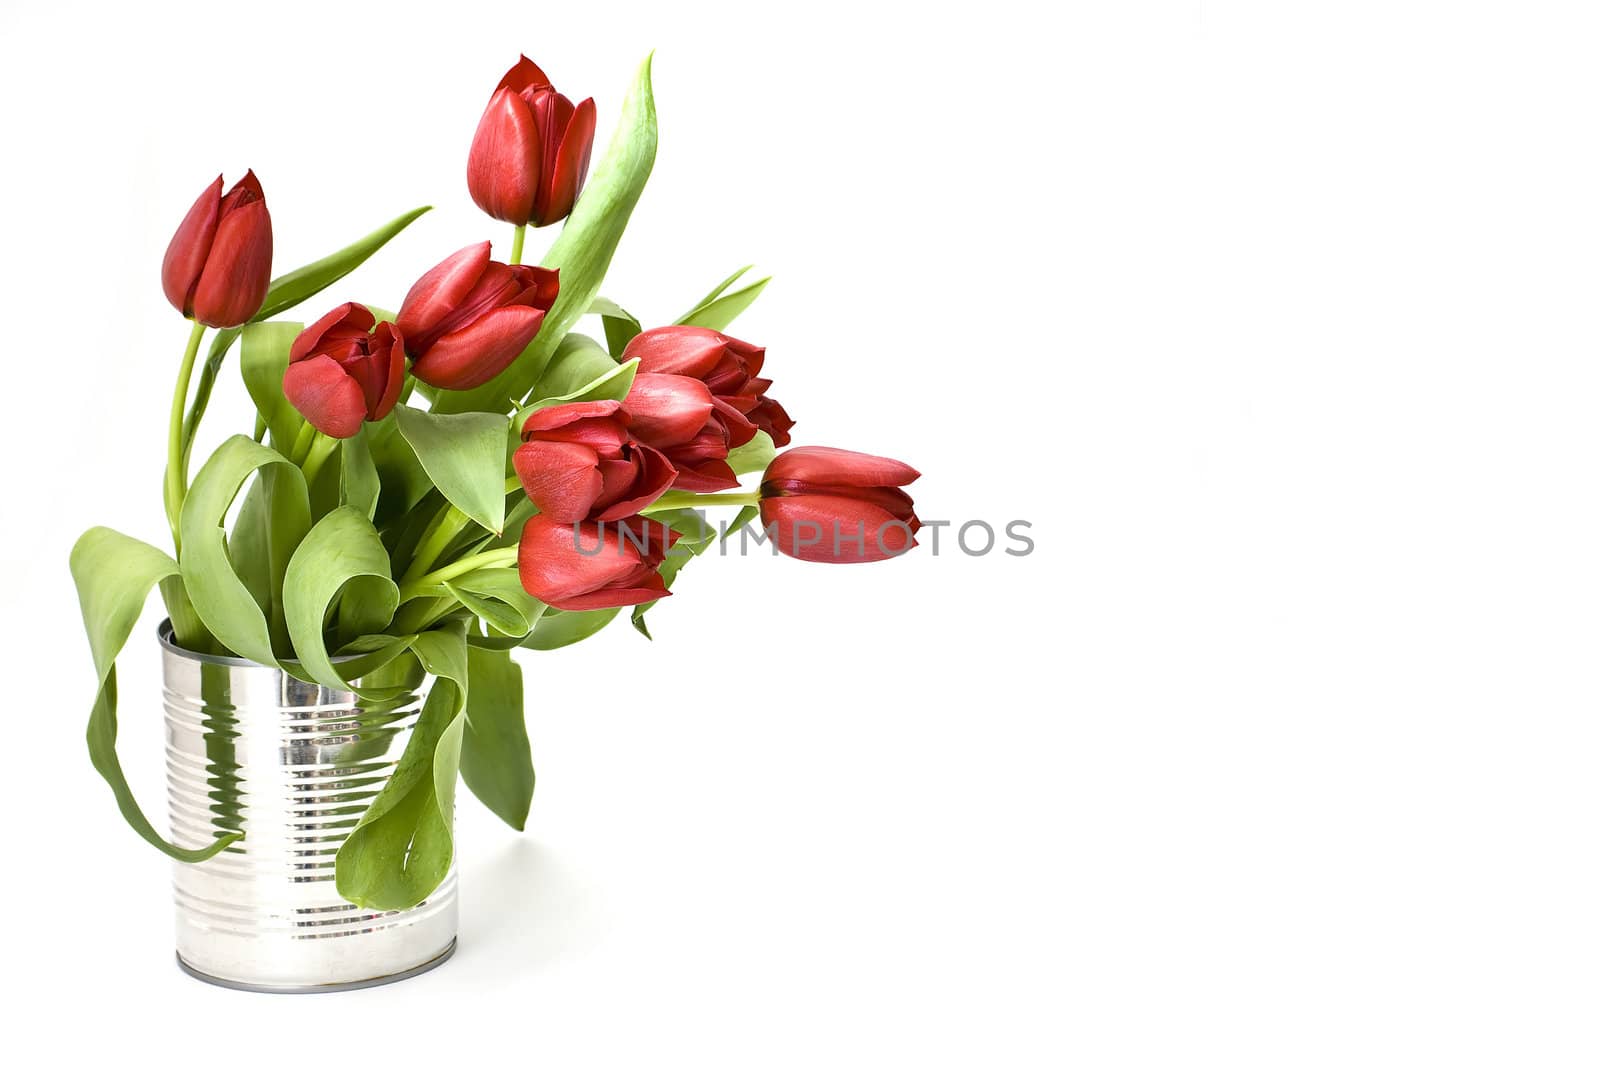 red tulips by miradrozdowski